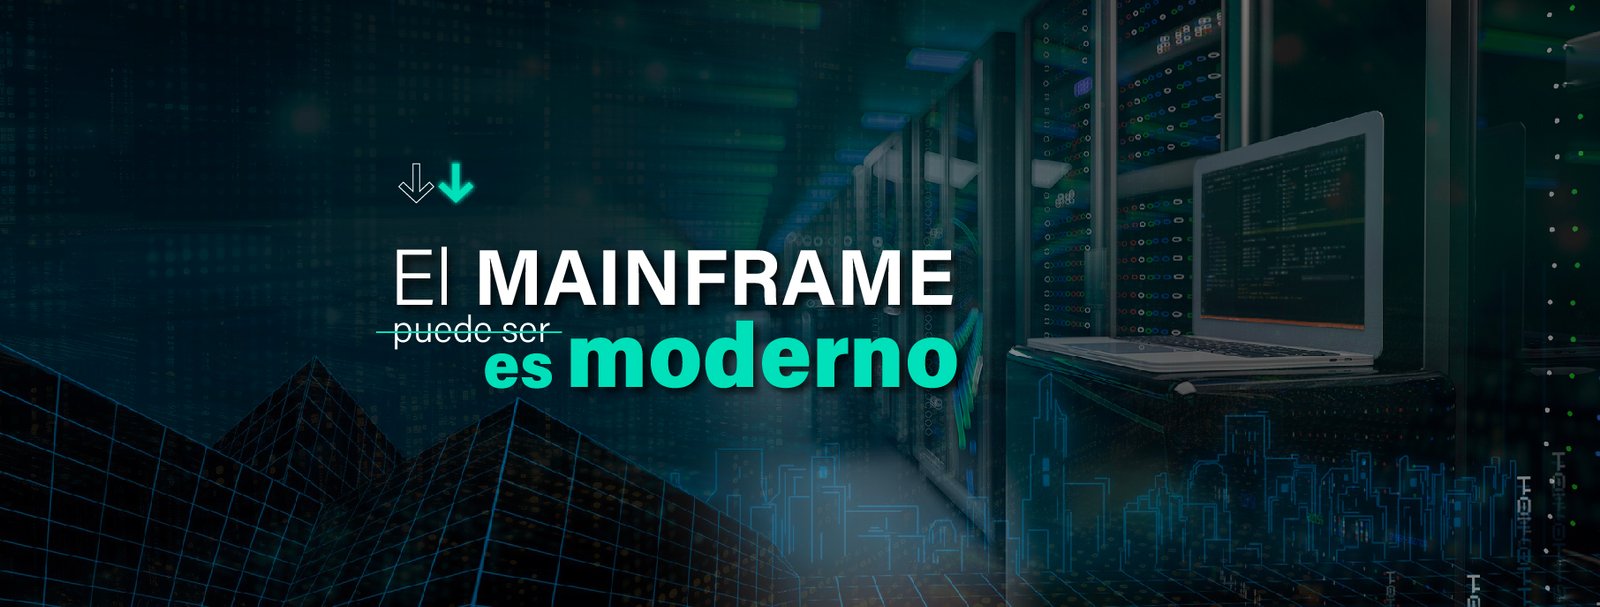 El Mainframe es moderno-Cómo modernizar el mainframe-IT Patagonia